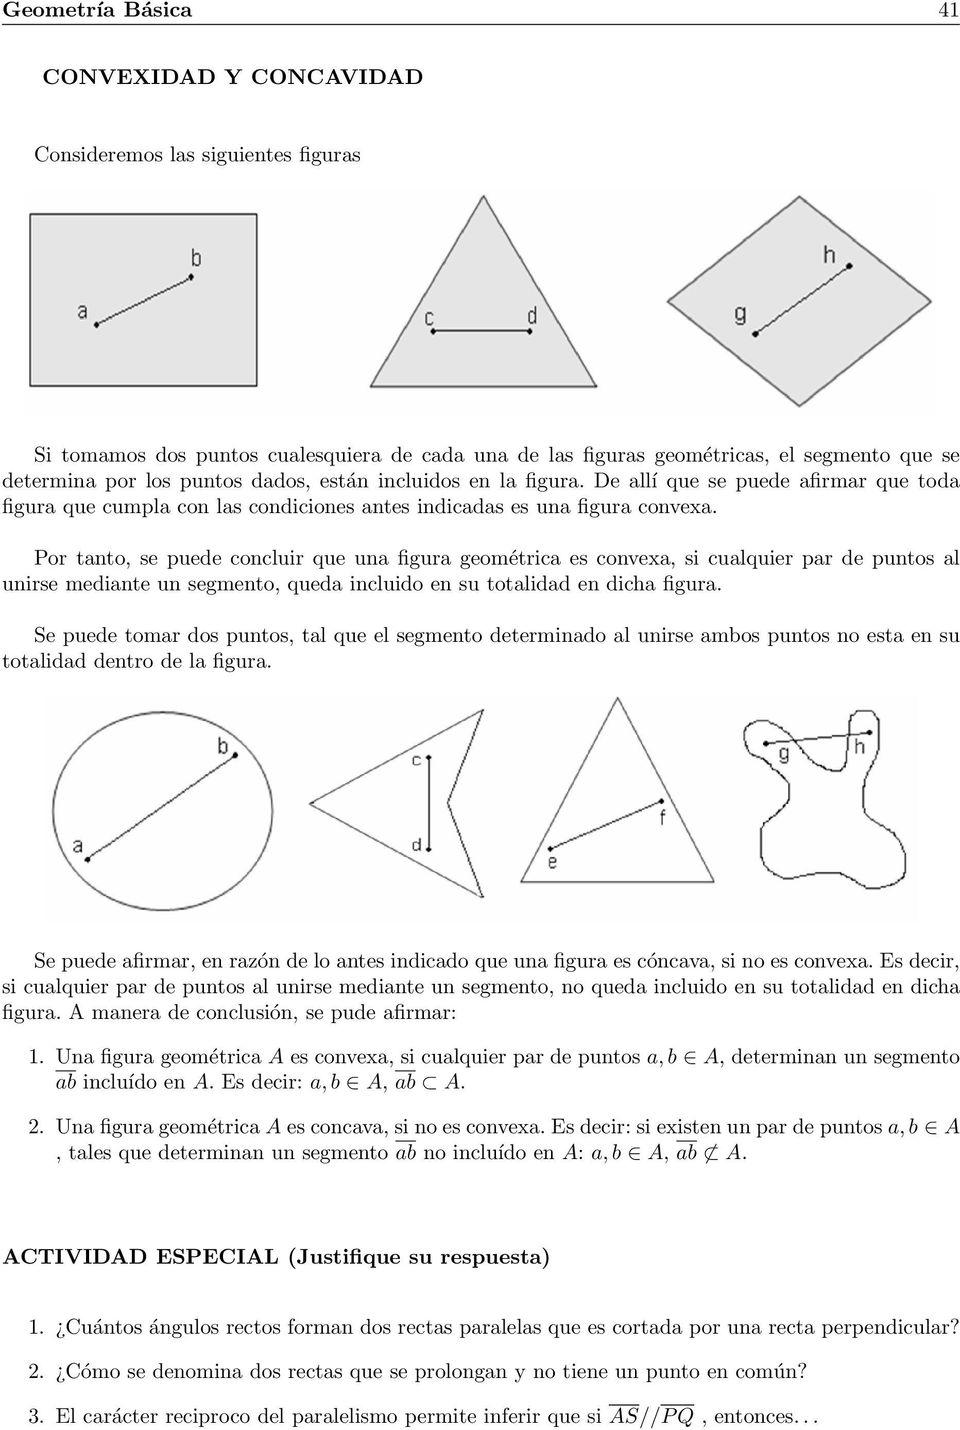 Por tanto, se puede concluir que una figura geométrica es convexa, si cualquier par de puntos al unirse mediante un segmento, queda incluido en su totalidad en dicha figura.